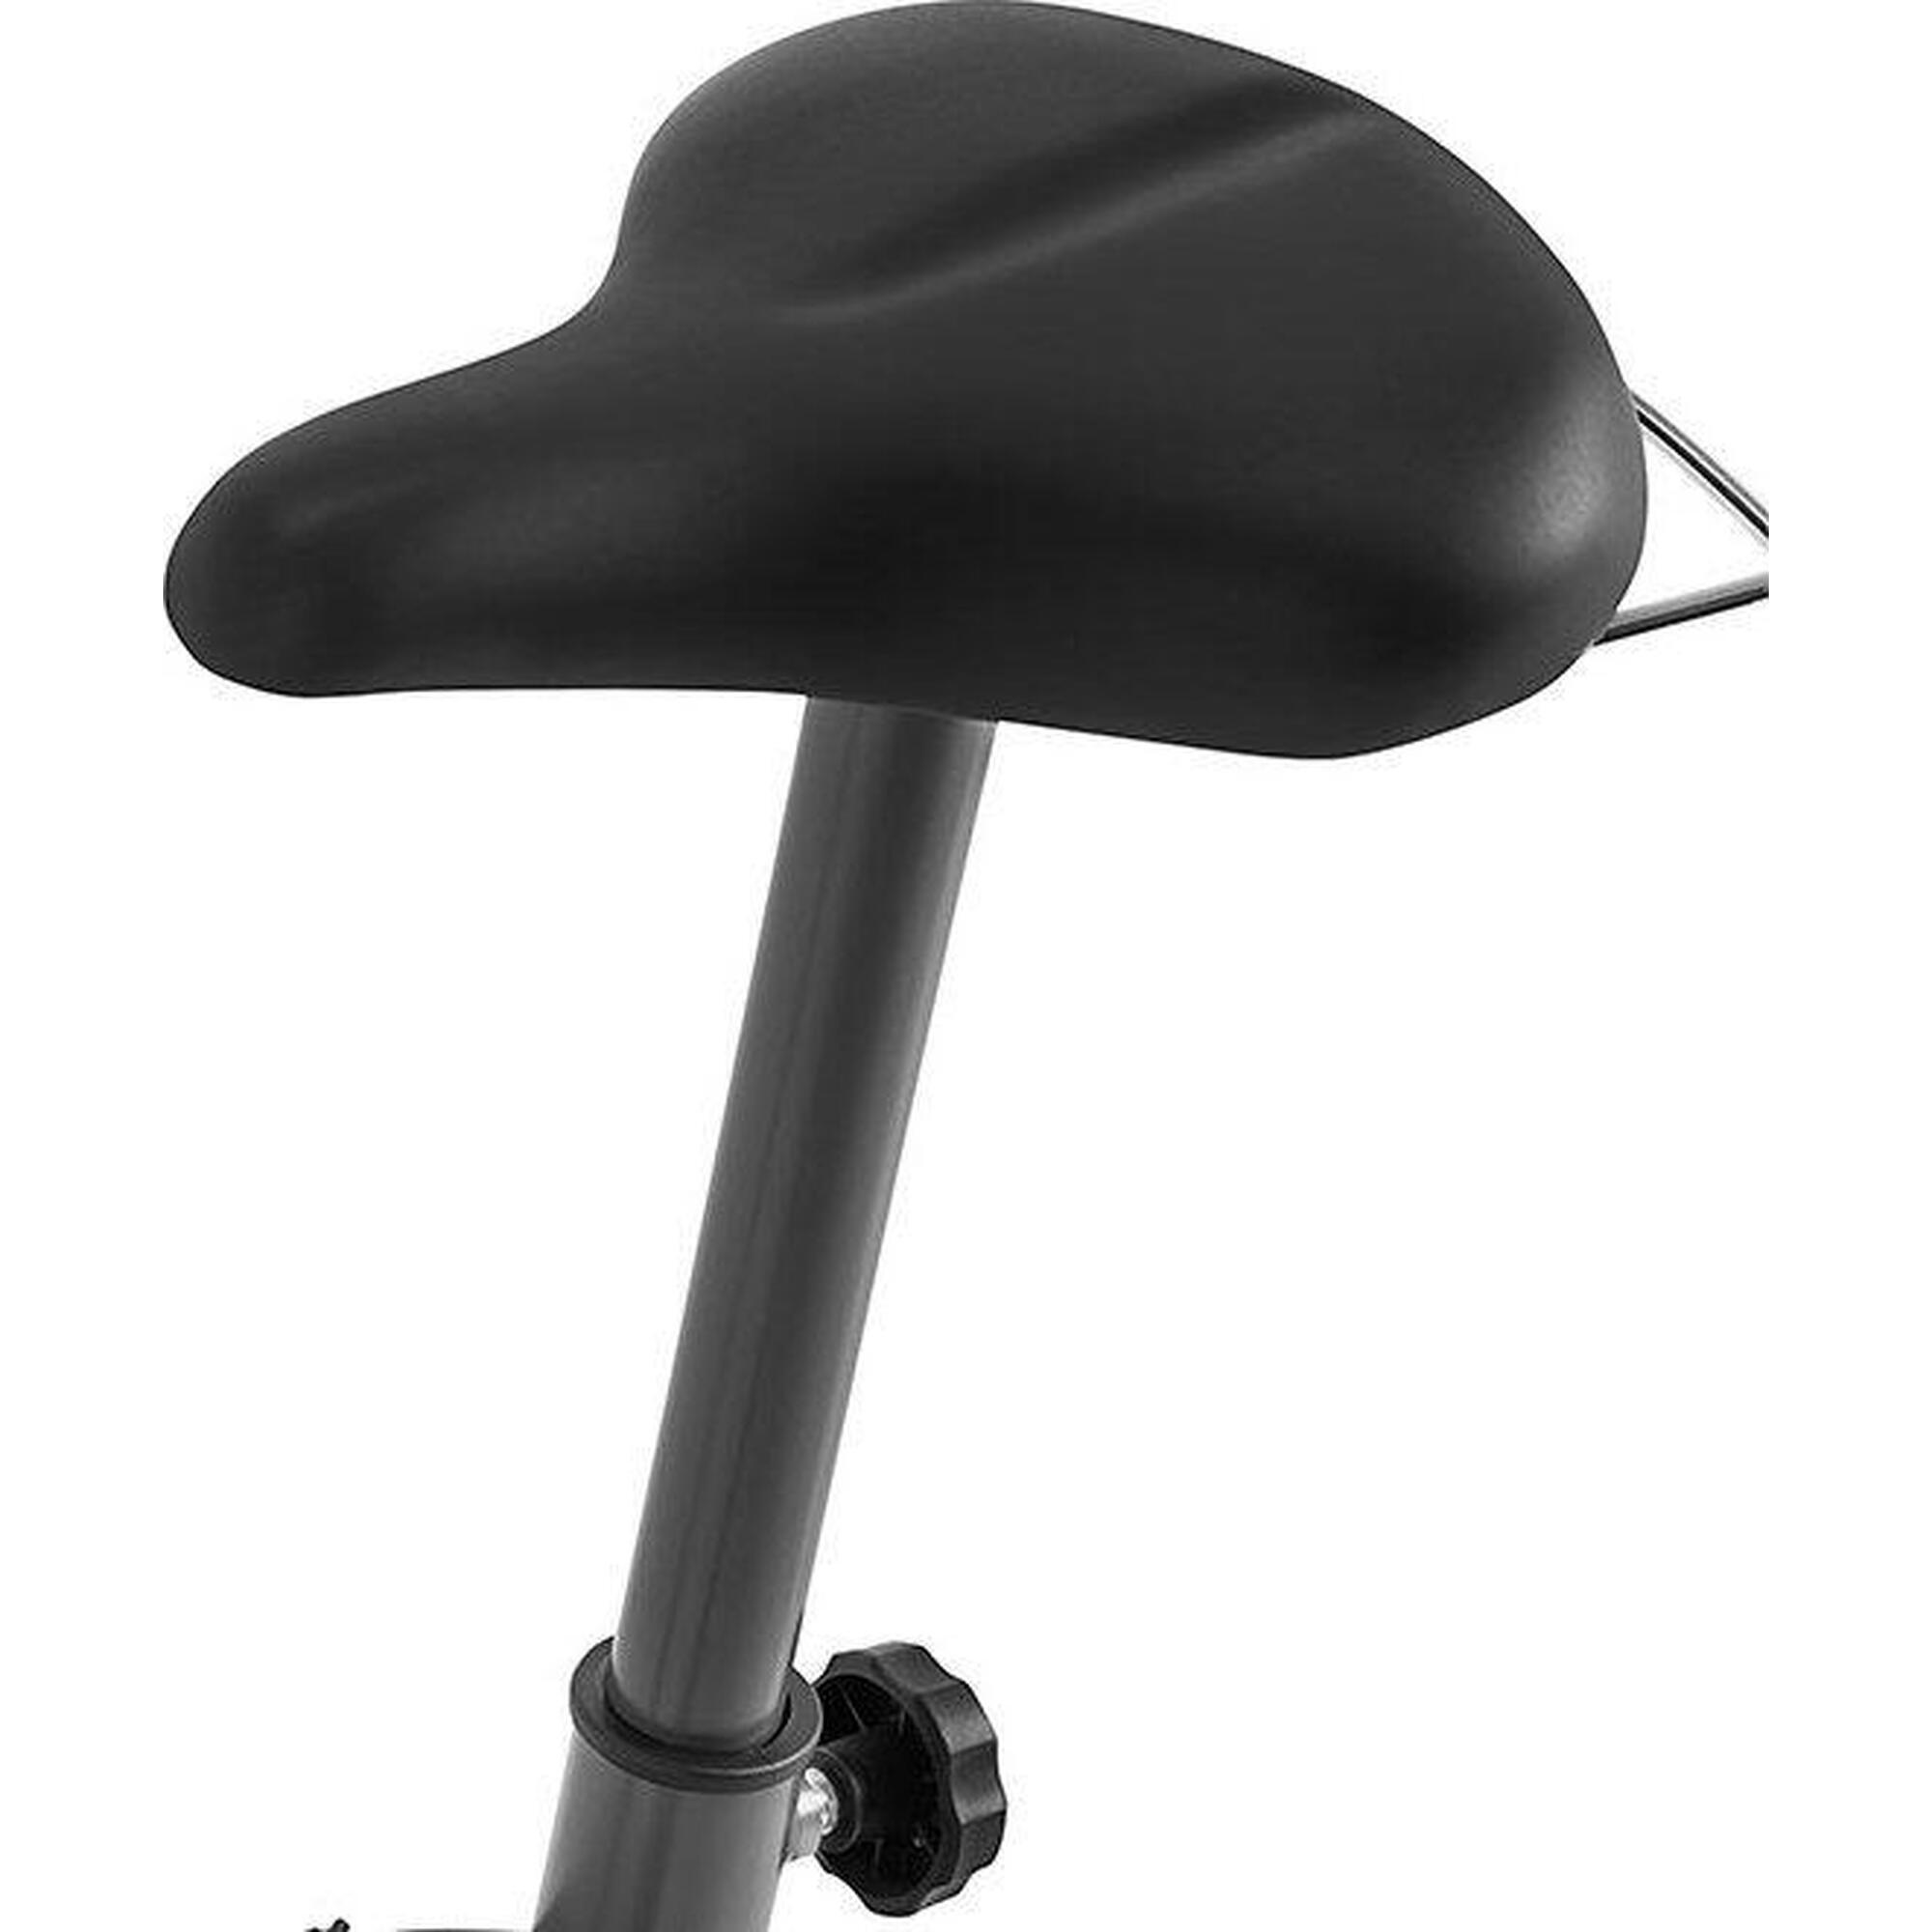 Cyclette magnetica Zipro Drift 8 livelli di resistenza per fitness e cardio